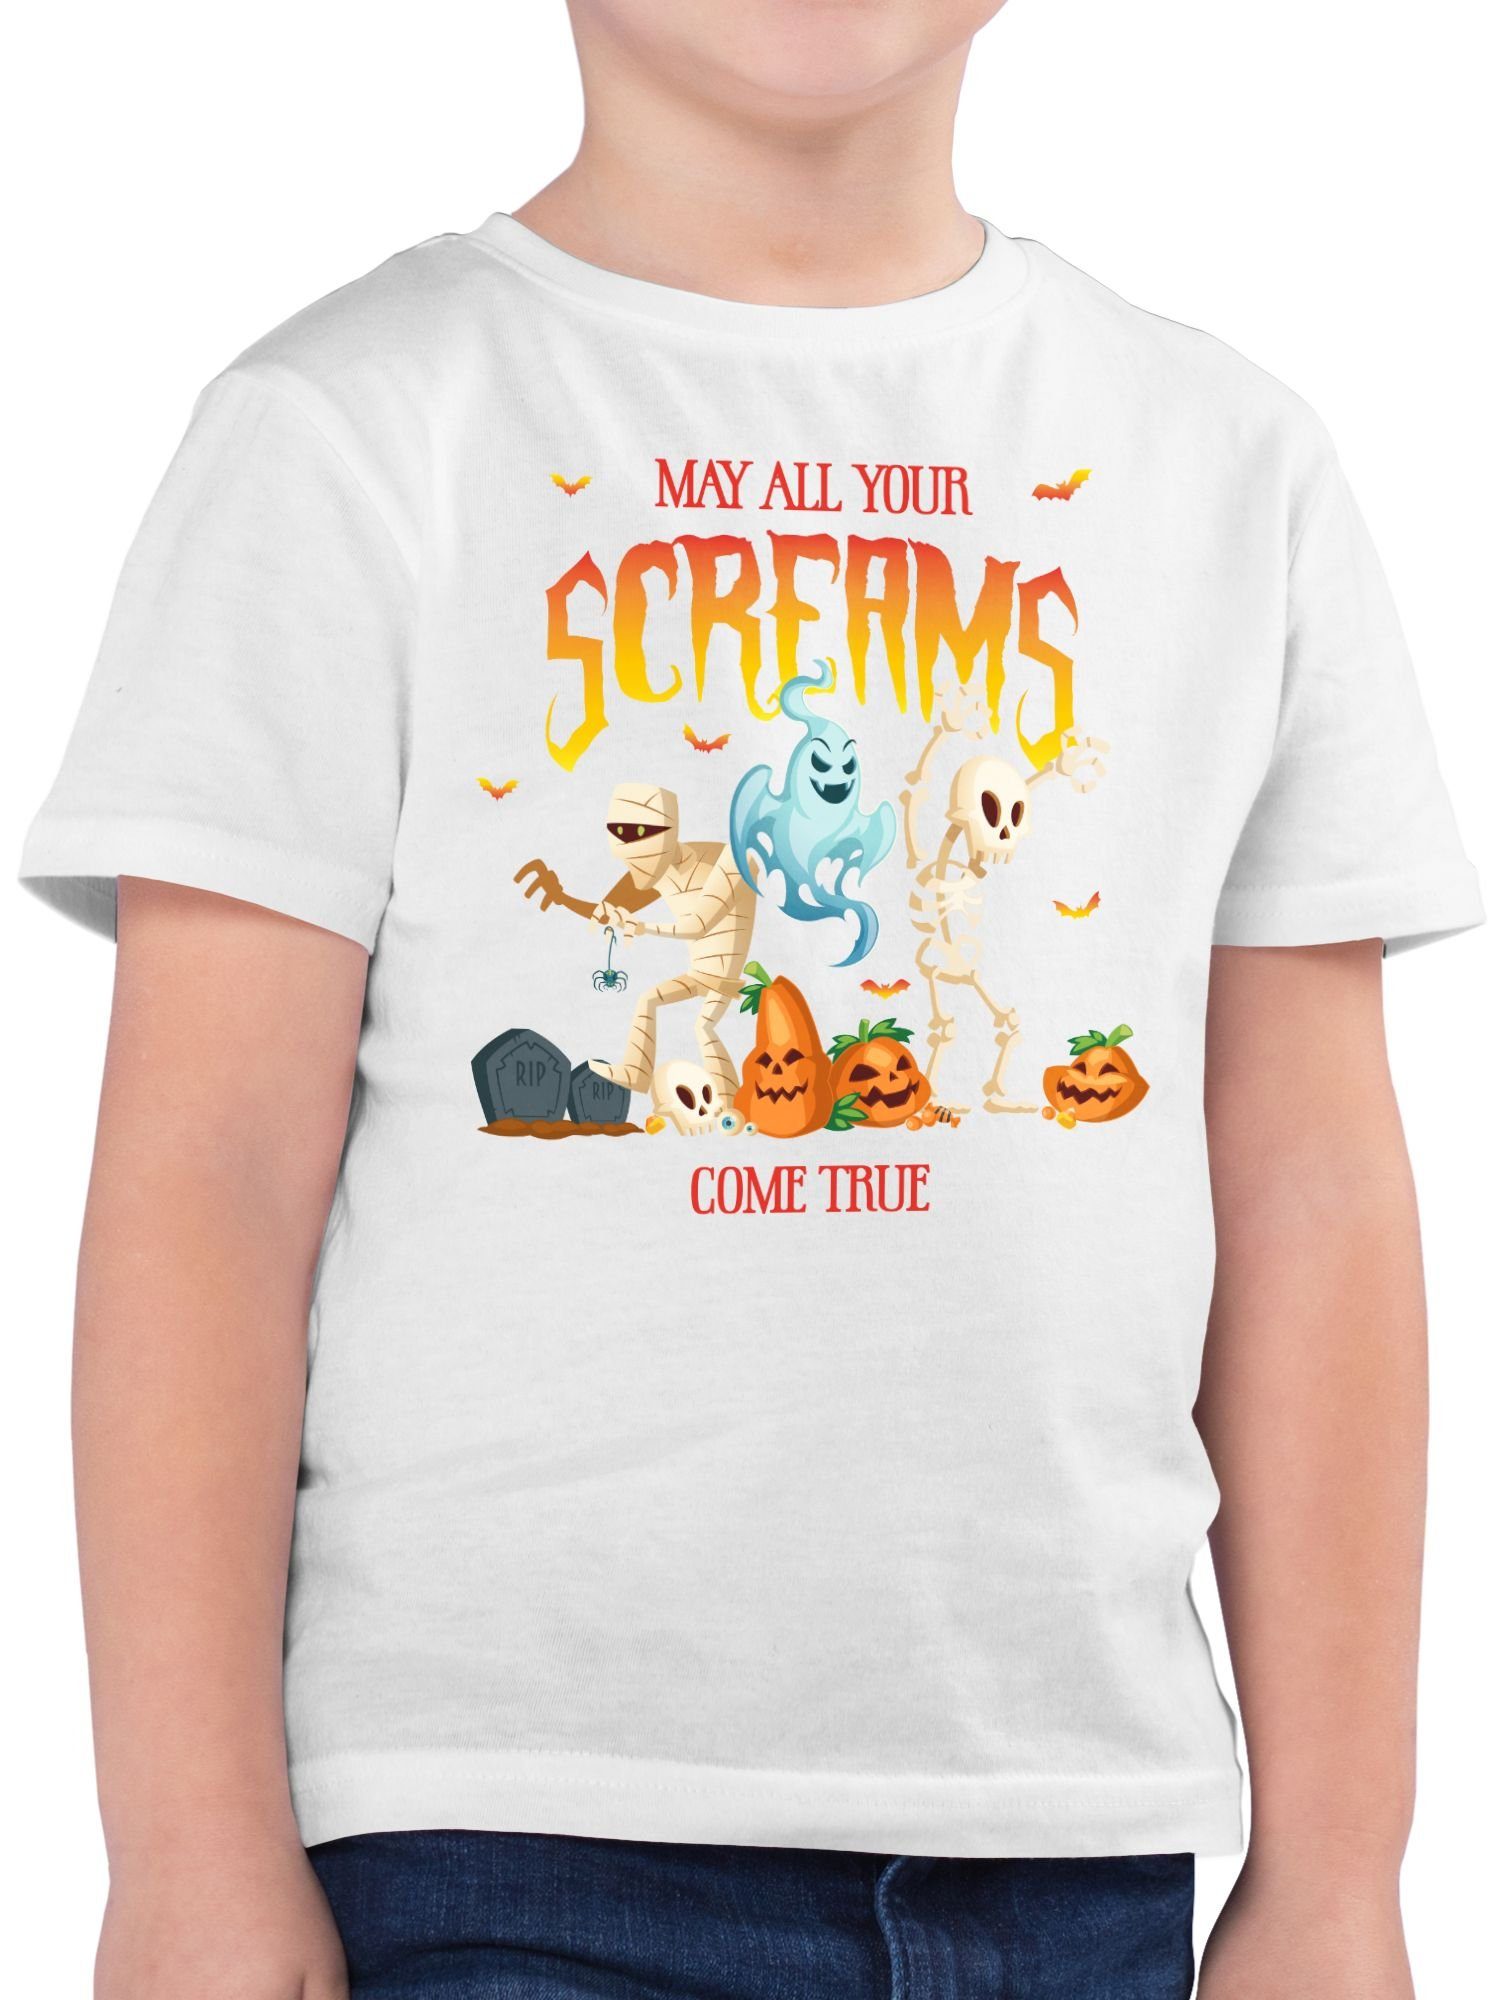 Shirtracer T-Shirt Geist Gespenst Zombie Skelett Halloween Kostüme für Kinder Jungs 02 Weiß